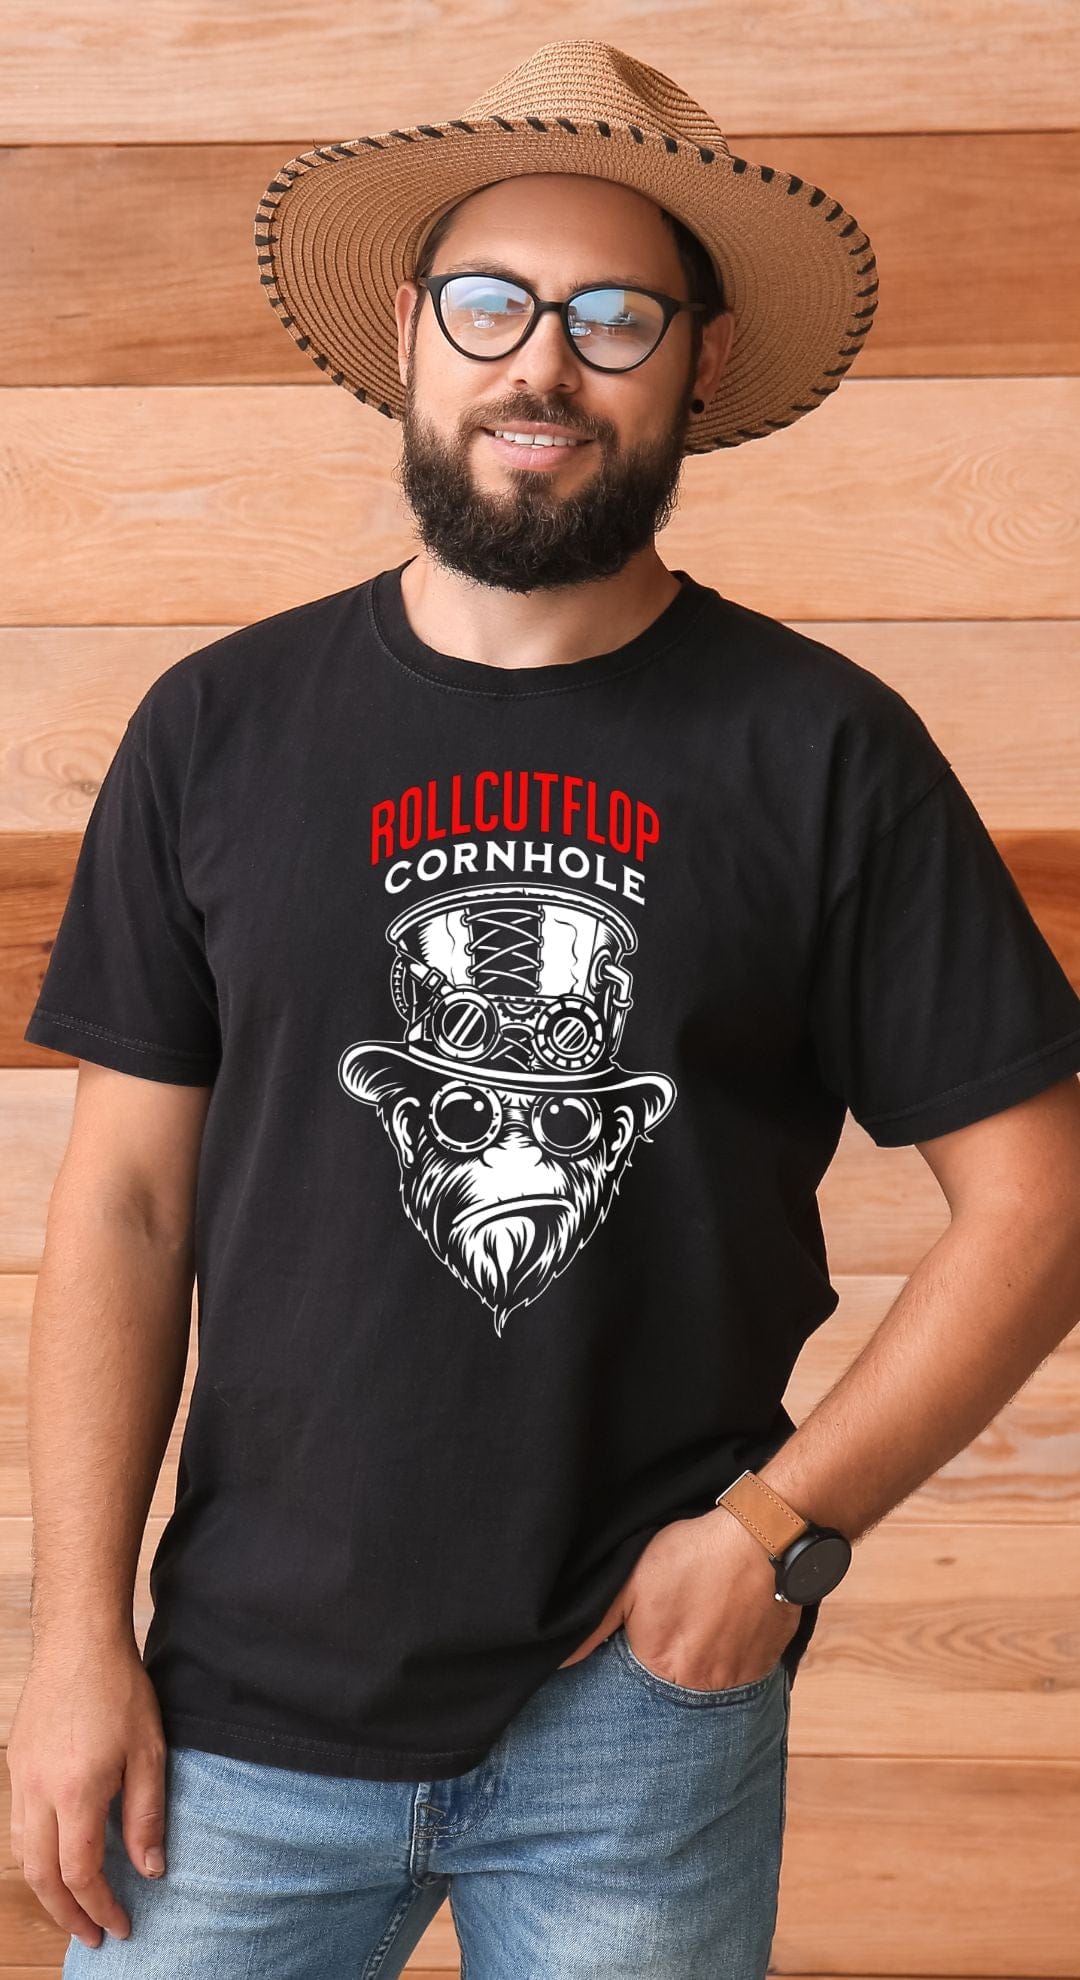 Man in hat wearing Roll Cut Flop Cornhole™ Unisex Black T-shirt - Steampunk Gorilla Face & Gears